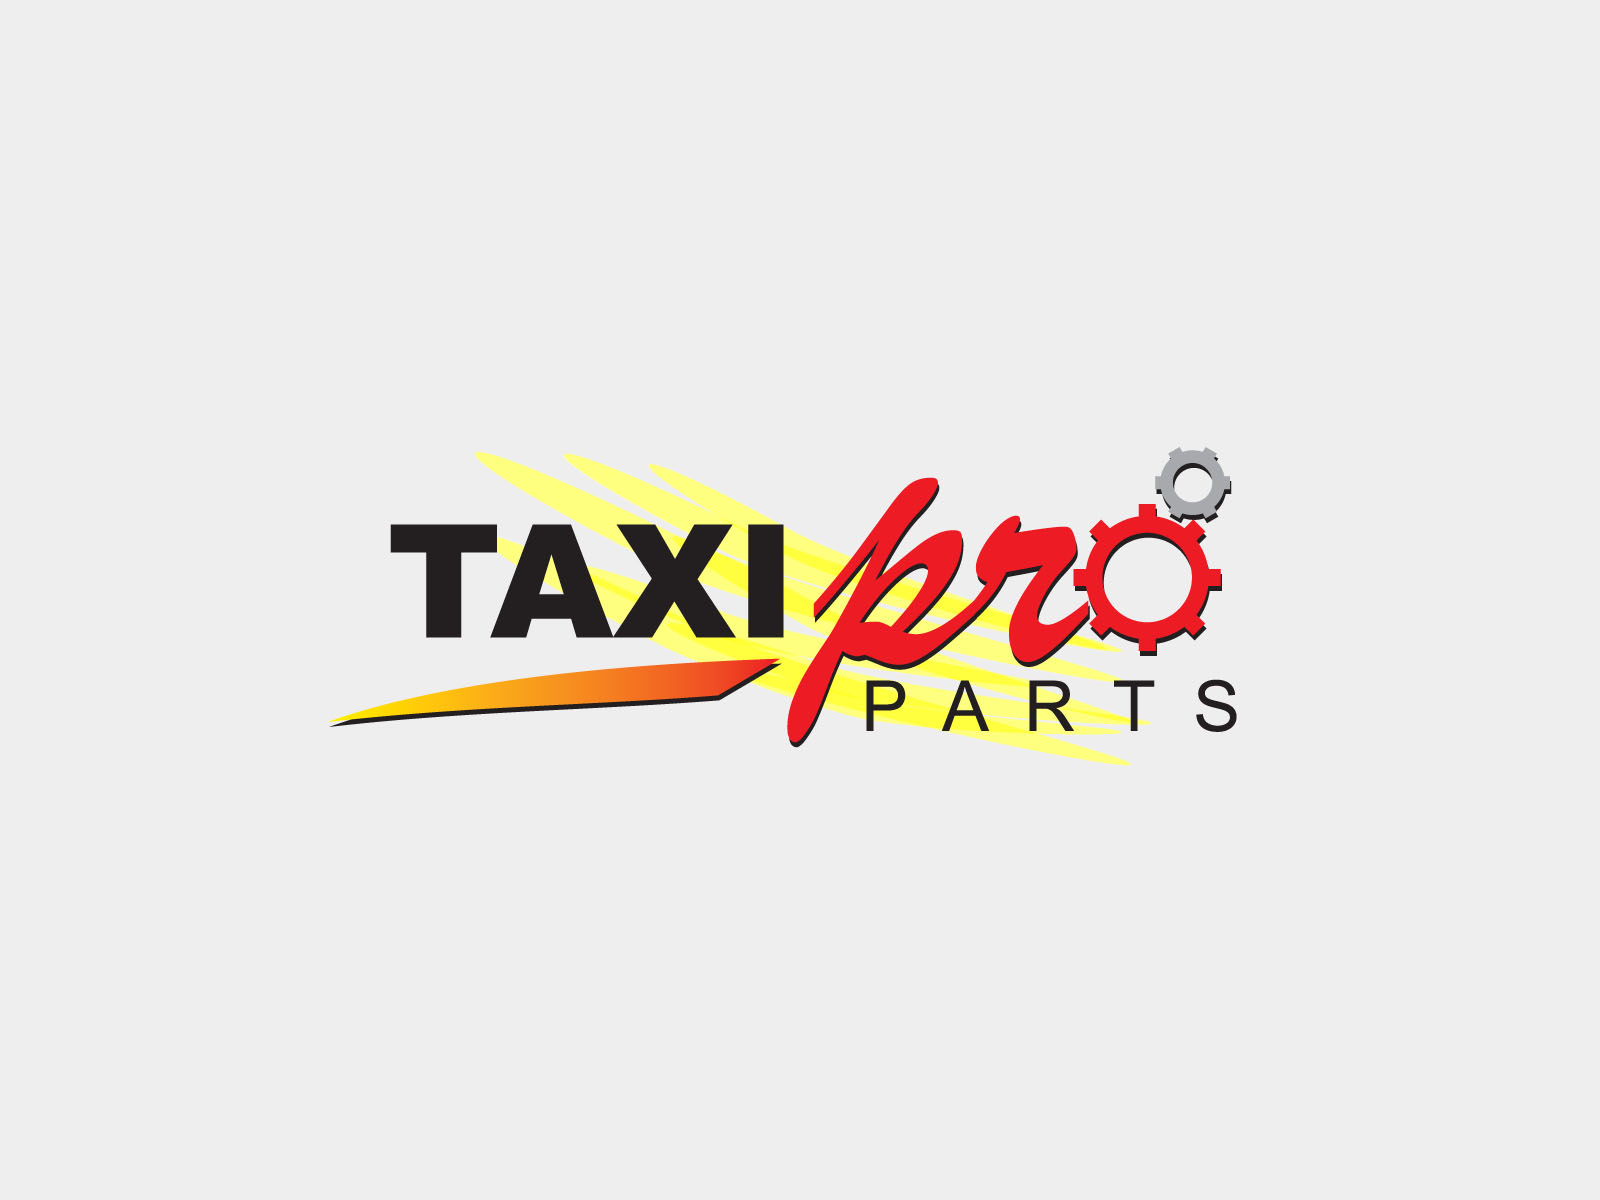 Taxi Pro Parts